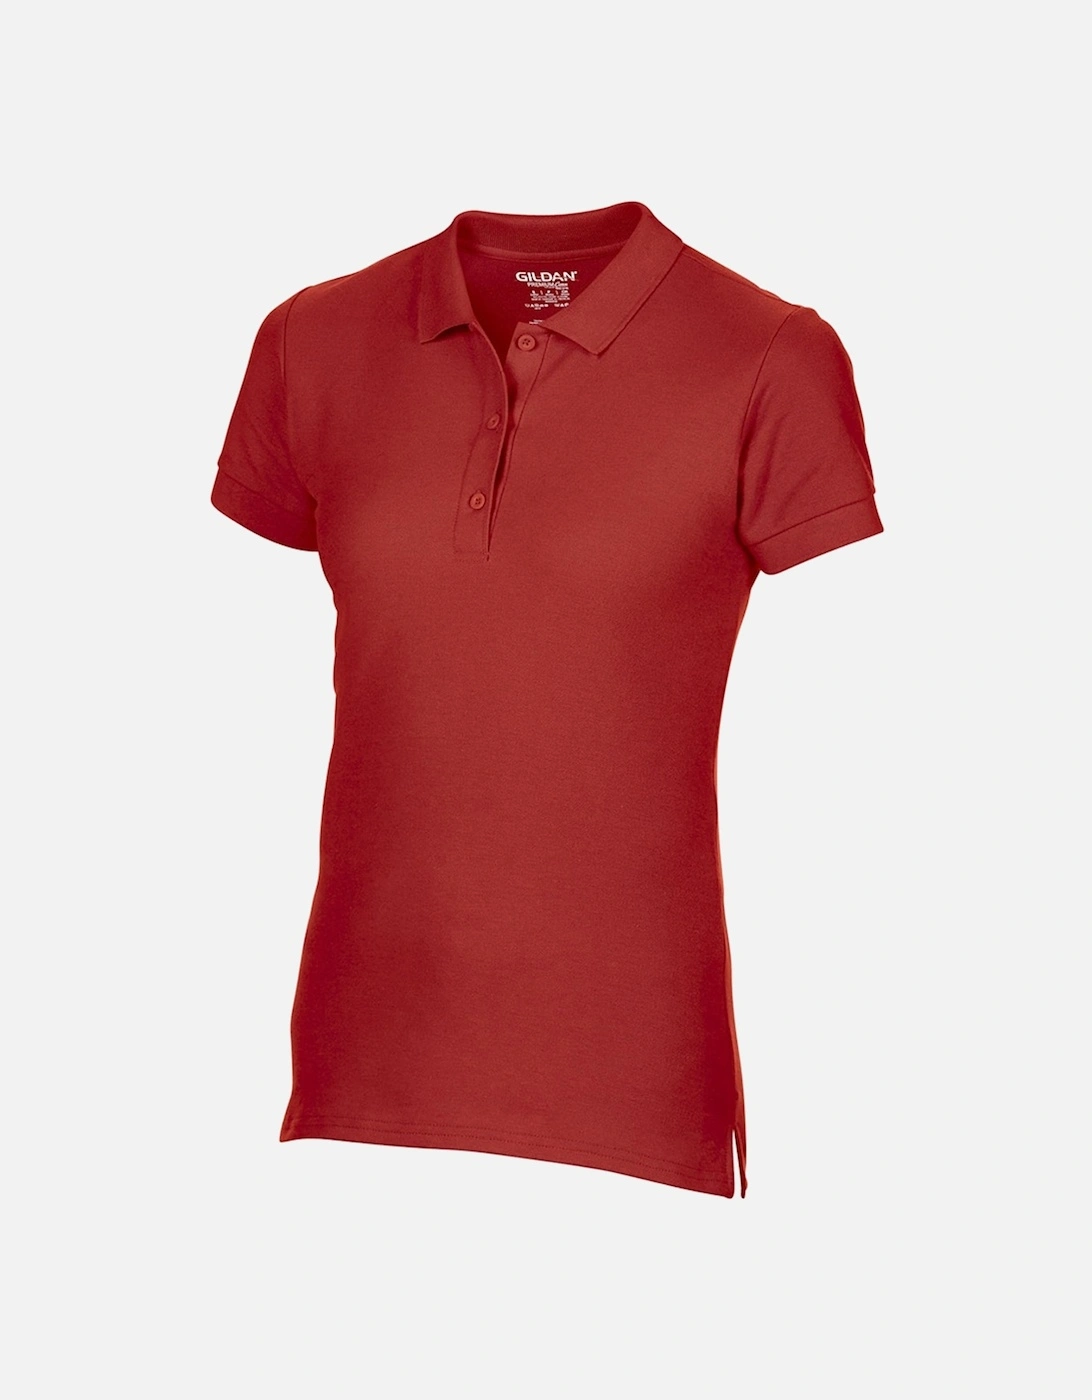 Womens/Ladies Premium Cotton Sport Double Pique Polo Shirt